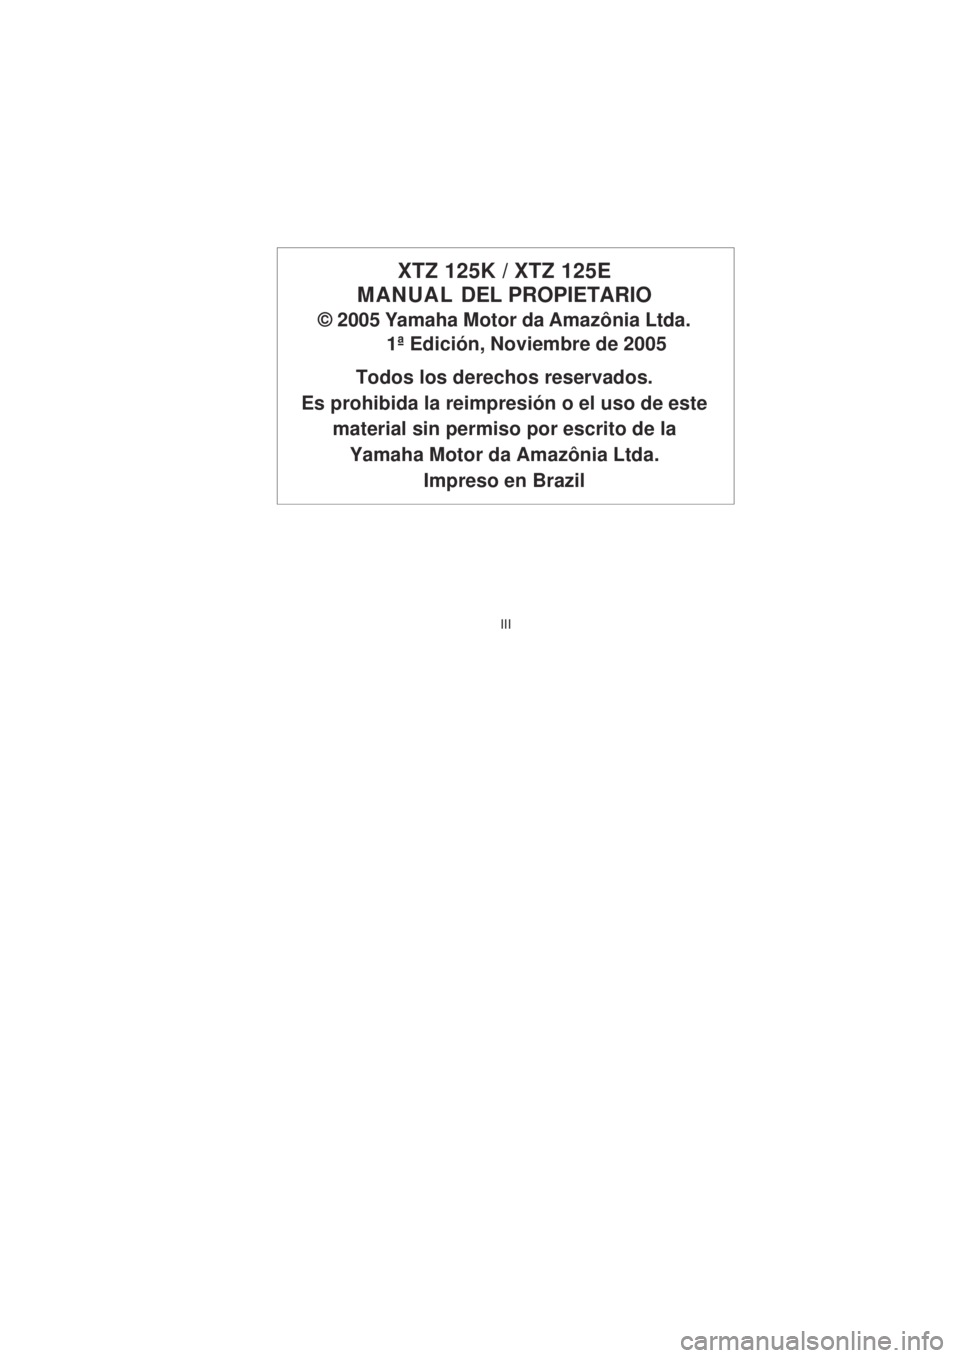 YAMAHA XTZ125 2006  Manuale de Empleo (in Spanish) III
III
XTZ 125K / XTZ 125E
MANUAL  DEL PROPIETARIO
© 2005 Yamaha Motor da Amazônia Ltda.
1ª Edición, Noviembre de 2005
Todos los derechos reservados.
Es prohibida la reimpresión o el uso de este